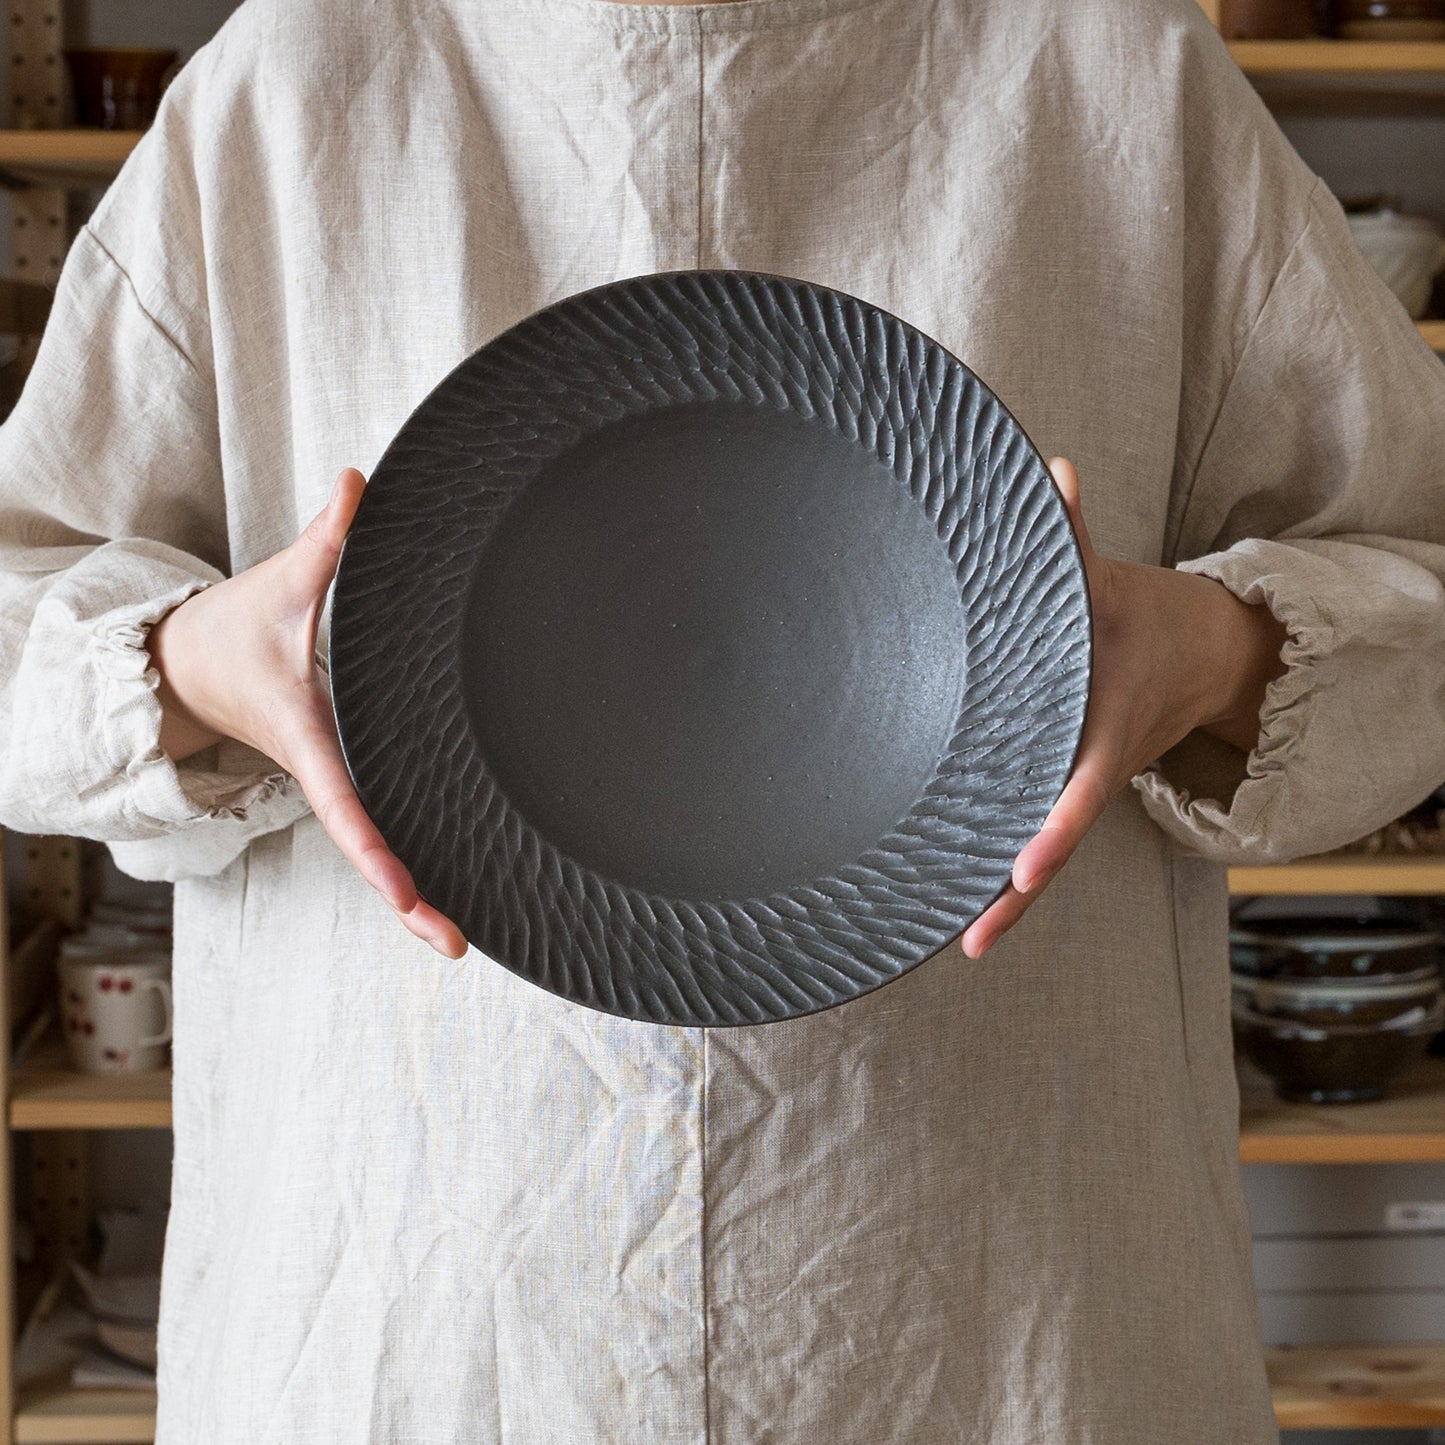 スタイリッシュな黒が素敵な山本雅則さんのしのぎリム皿8寸